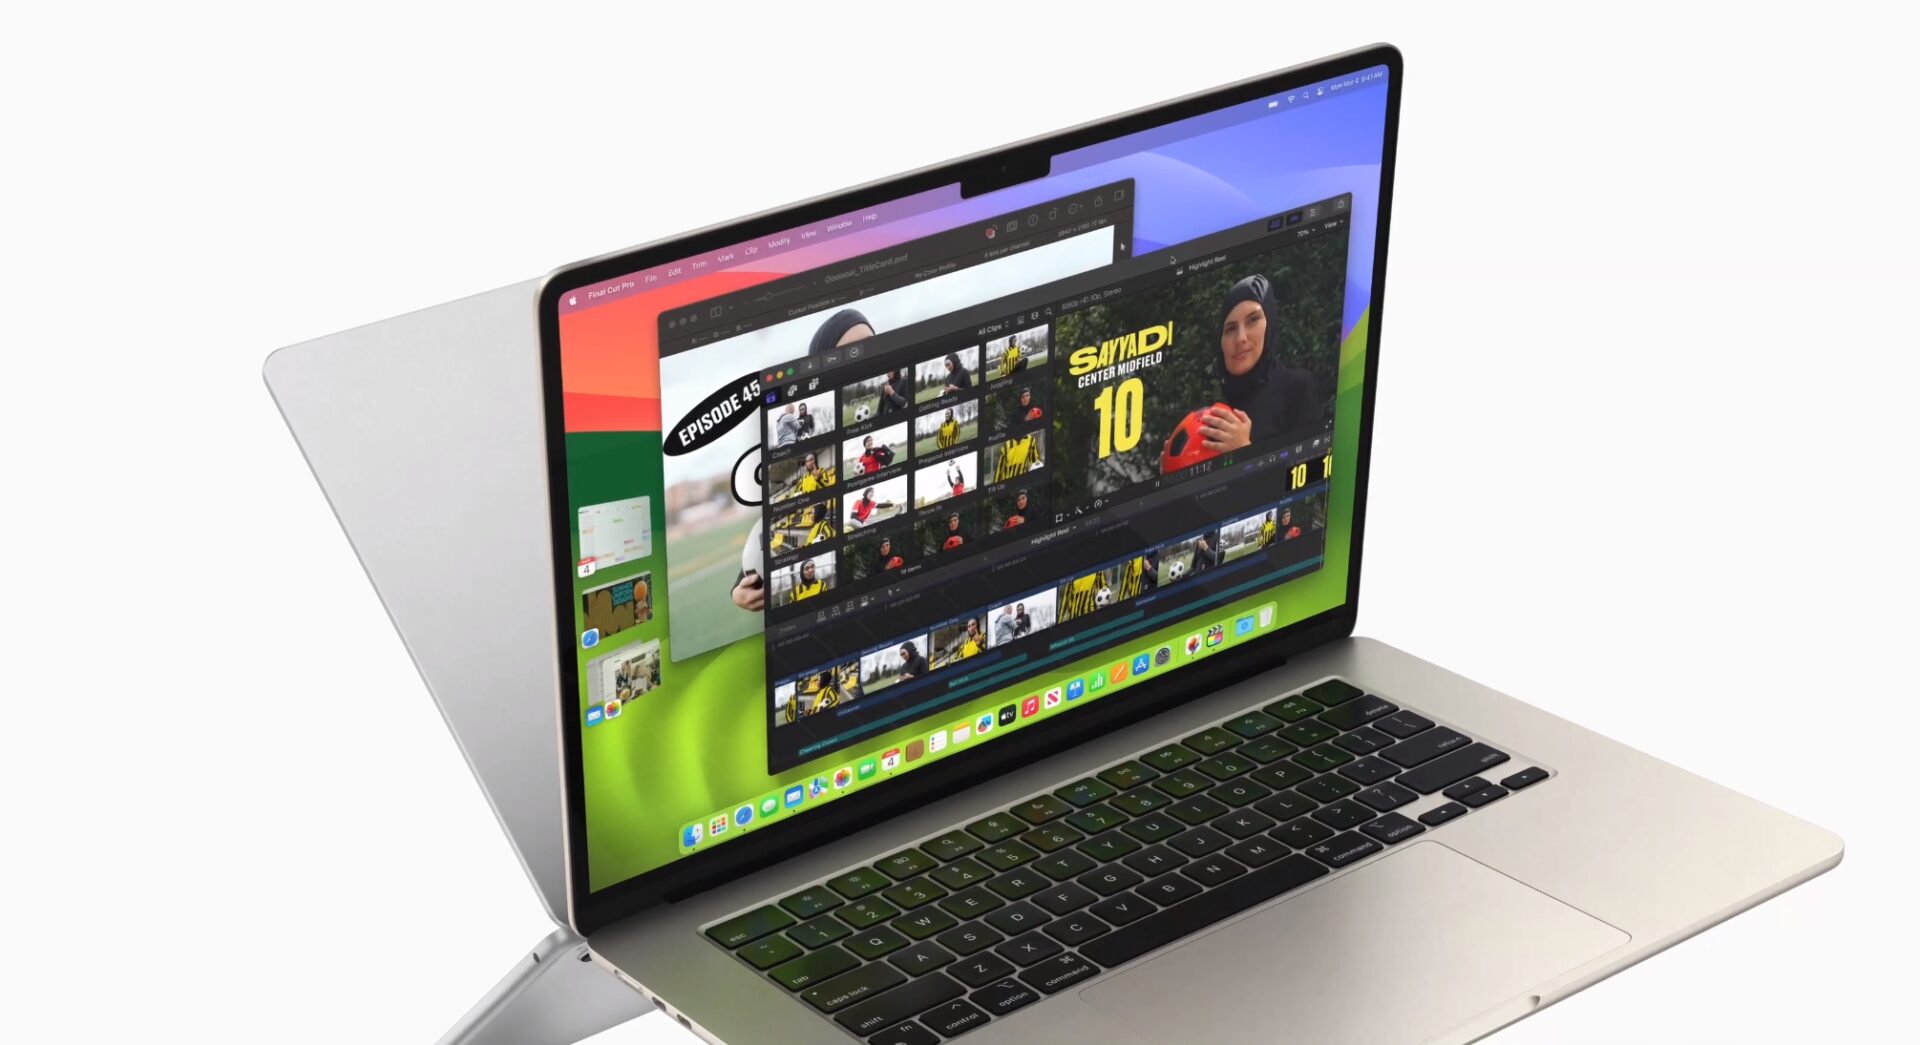 Microsoft speră ca noile laptop-uri cu cipuri Qualcomm să depășească MacBook Air cu M3 de la Apple